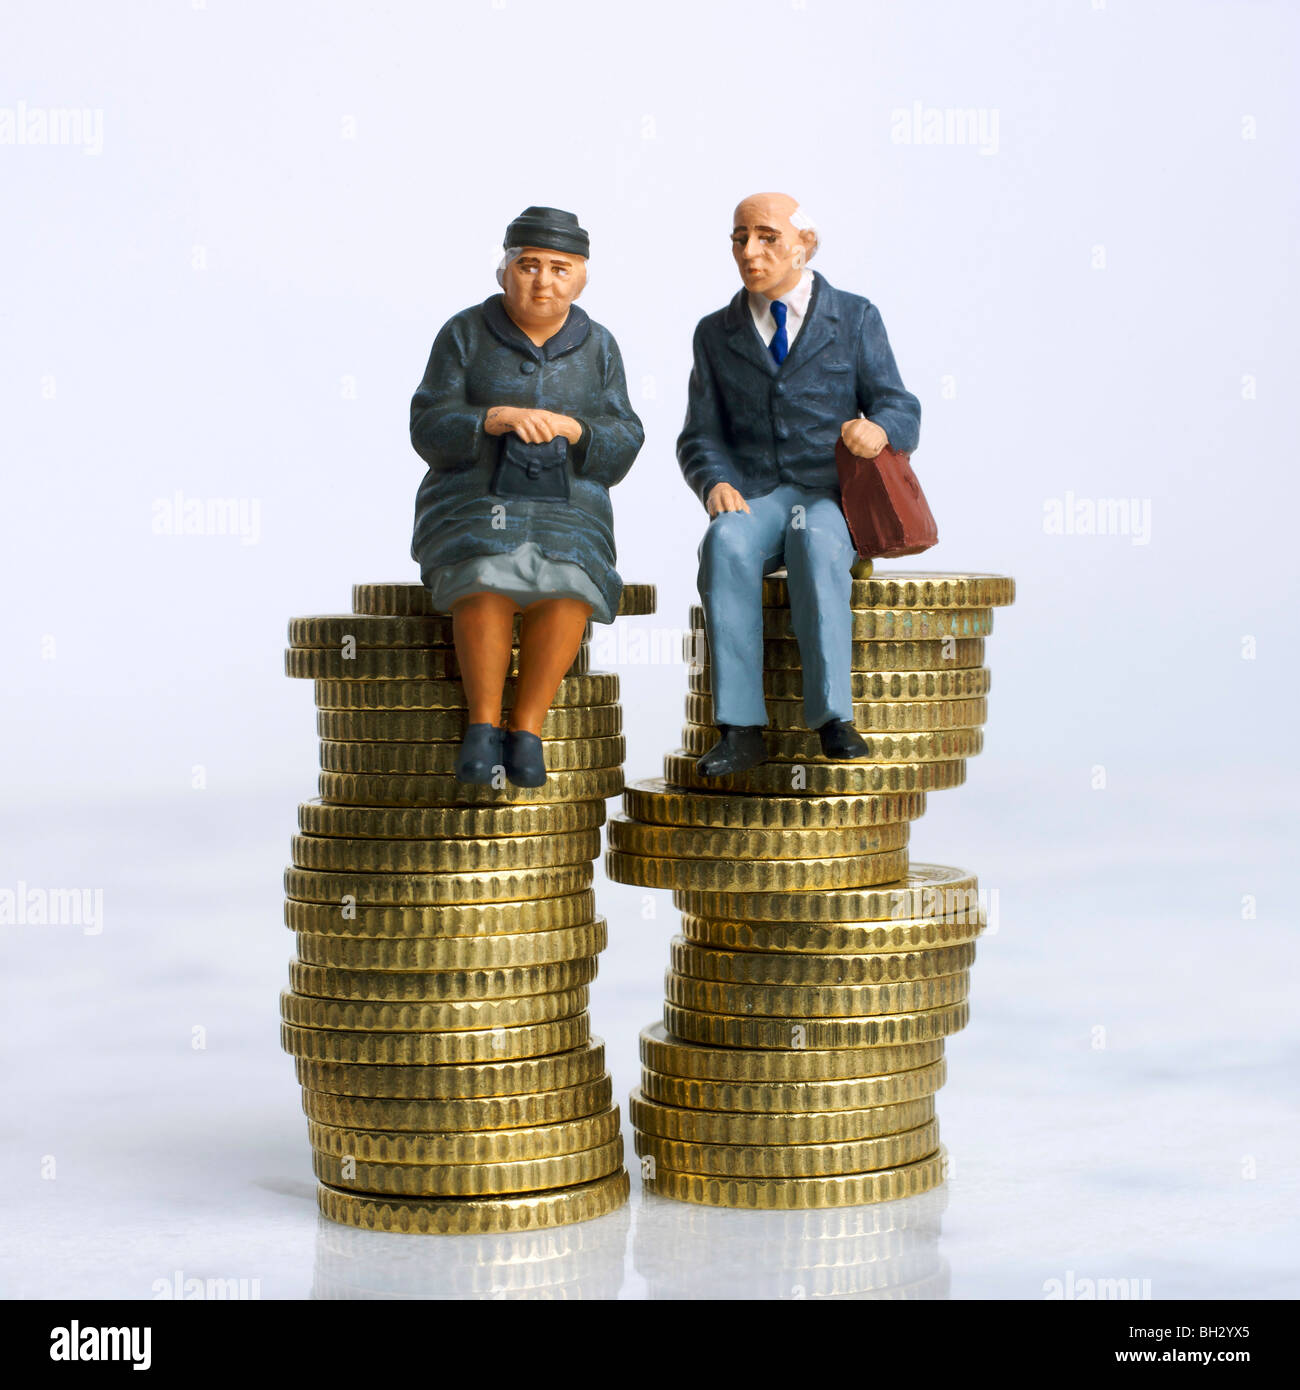 Le persone anziane / giovane (figurine) - seduta su un mucchio di soldi monete - risparmio / fatture / finanziario / Investimenti / concetto delle pensioni Foto Stock